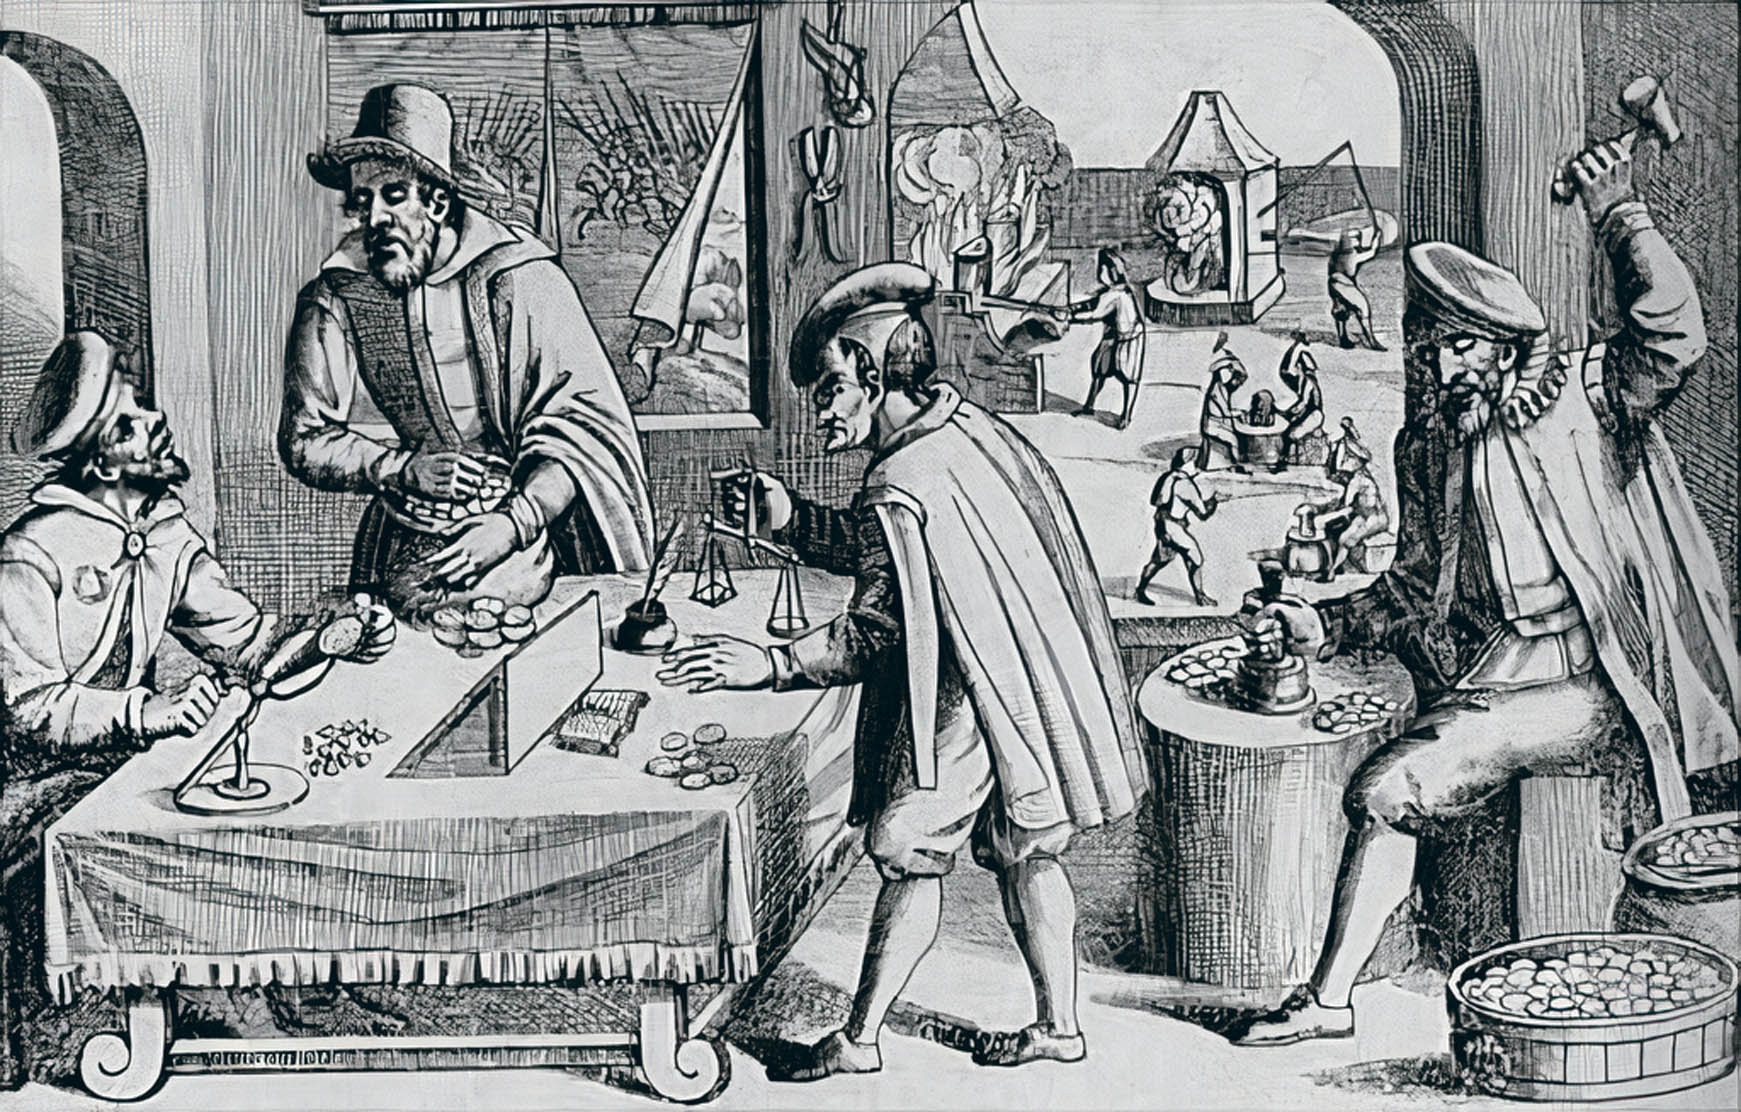 Malostranský obchodník Hans de Witte zbohatl na ražbì nekvalitních mincí a stal se hlavním bankéøem a vojenským dodavatelem èeského velmože a císaøského generála Albrechta z Valdštejna.